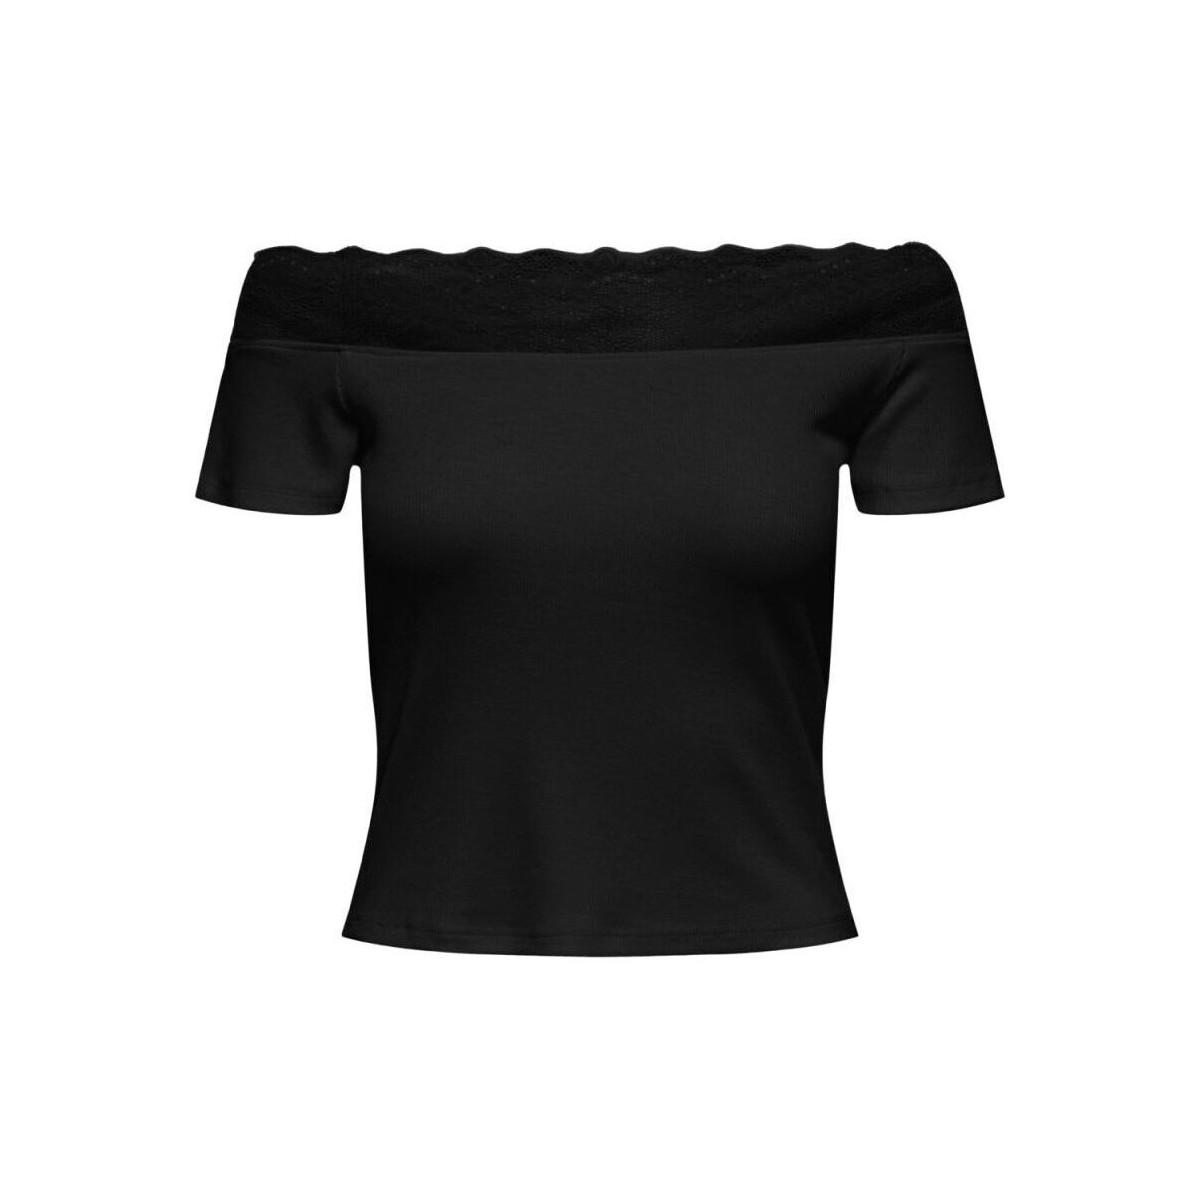 textil Mujer Camisetas sin mangas Only 15315914 SINA-BLACK Negro